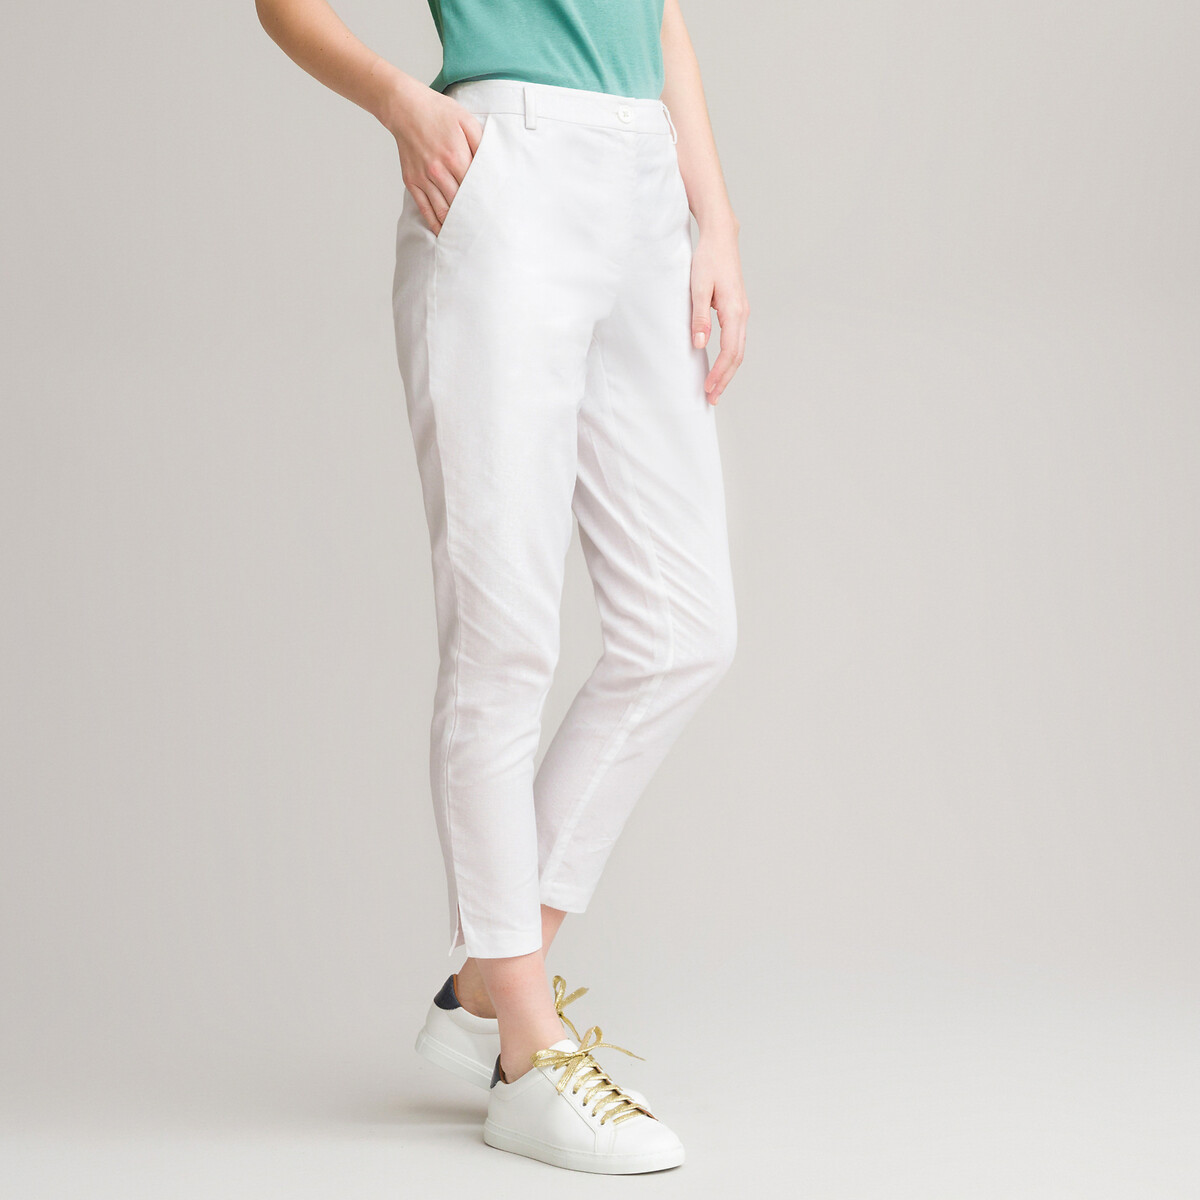 Ankle grazer trousers in chevron print with elasticated waist, length  26.5, grey herringbone, Anne Weyburn